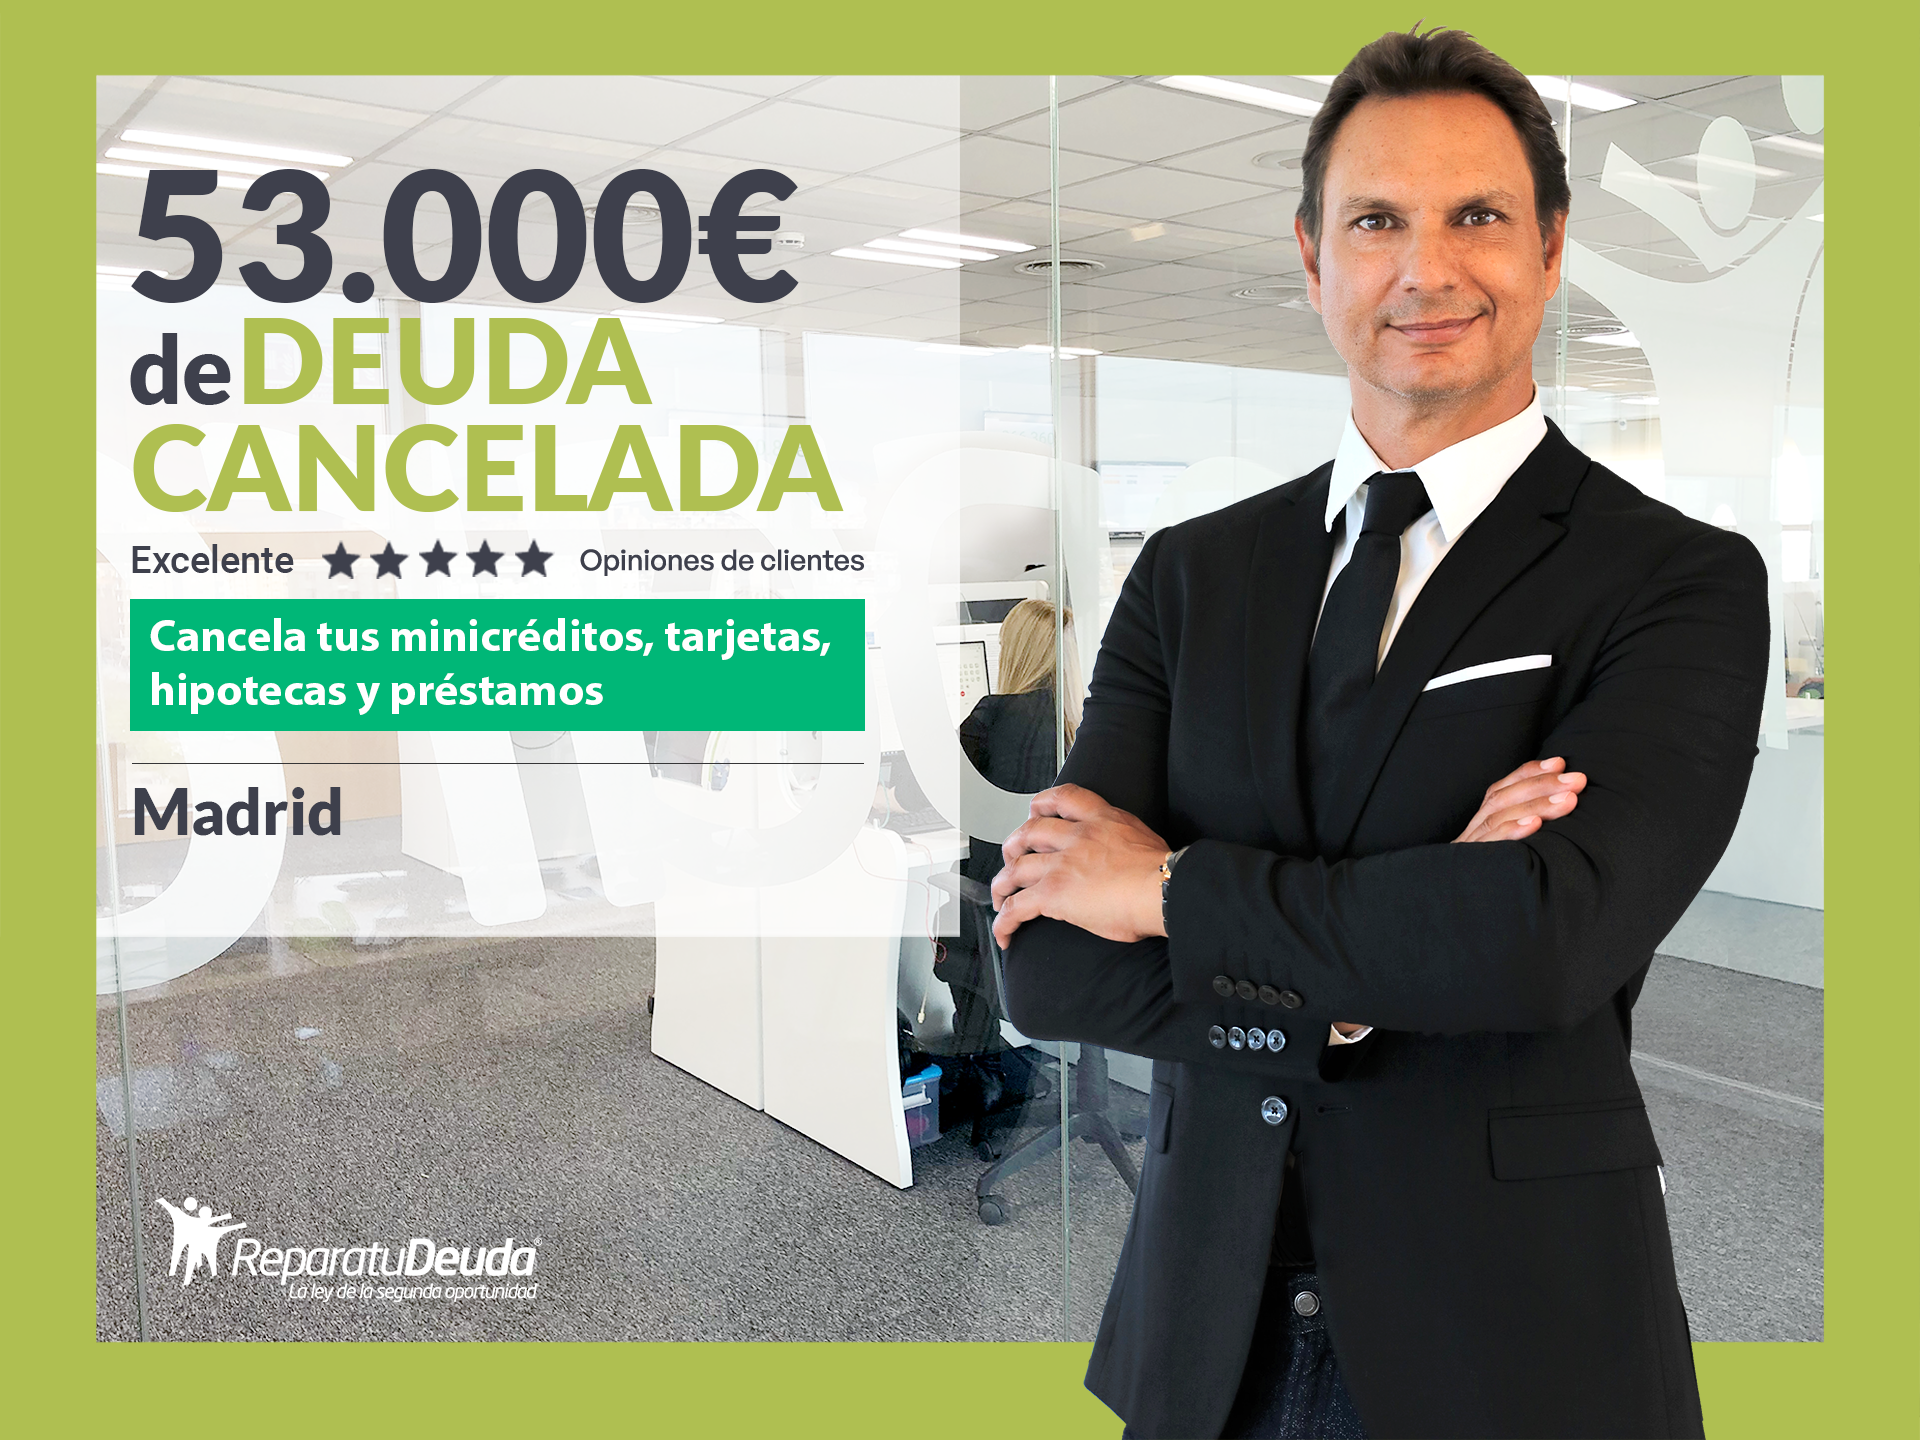 Repara tu Deuda Abogados cancela 53.000? en Madrid gracias a la Ley de Segunda Oportunidad